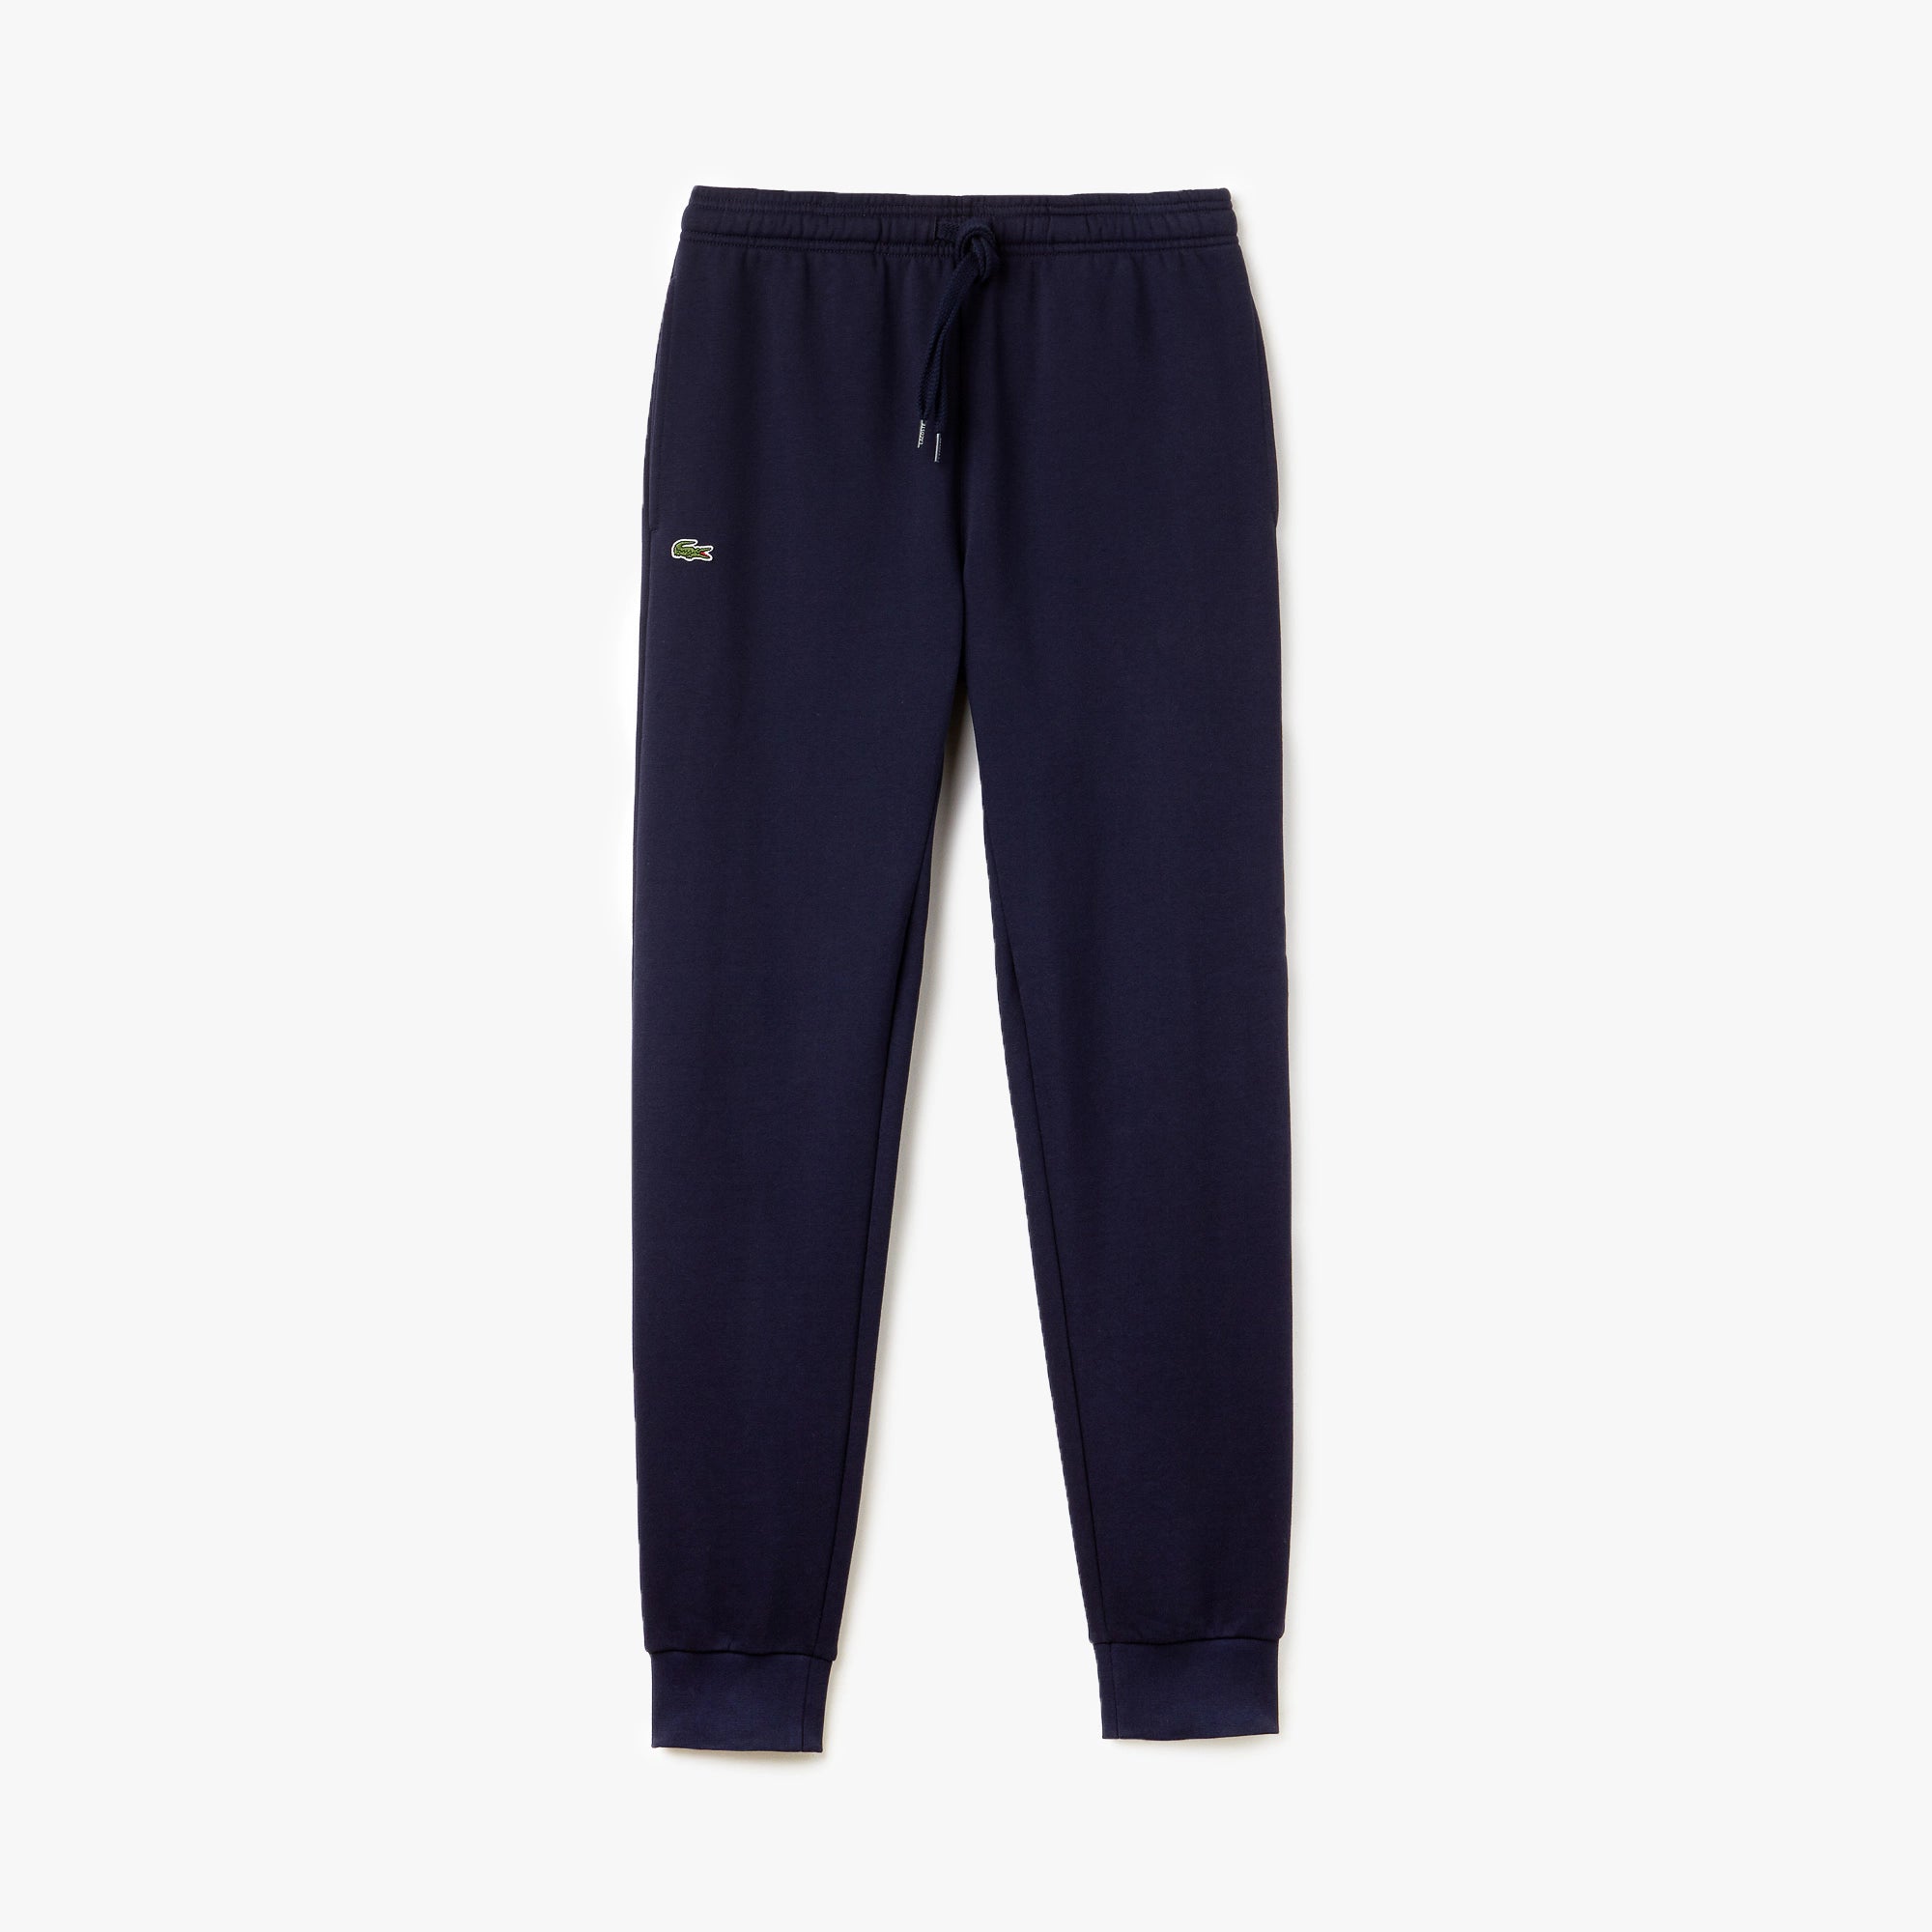 Lacoste SPORT Fleece Tennis Sweatpants Navy Blue